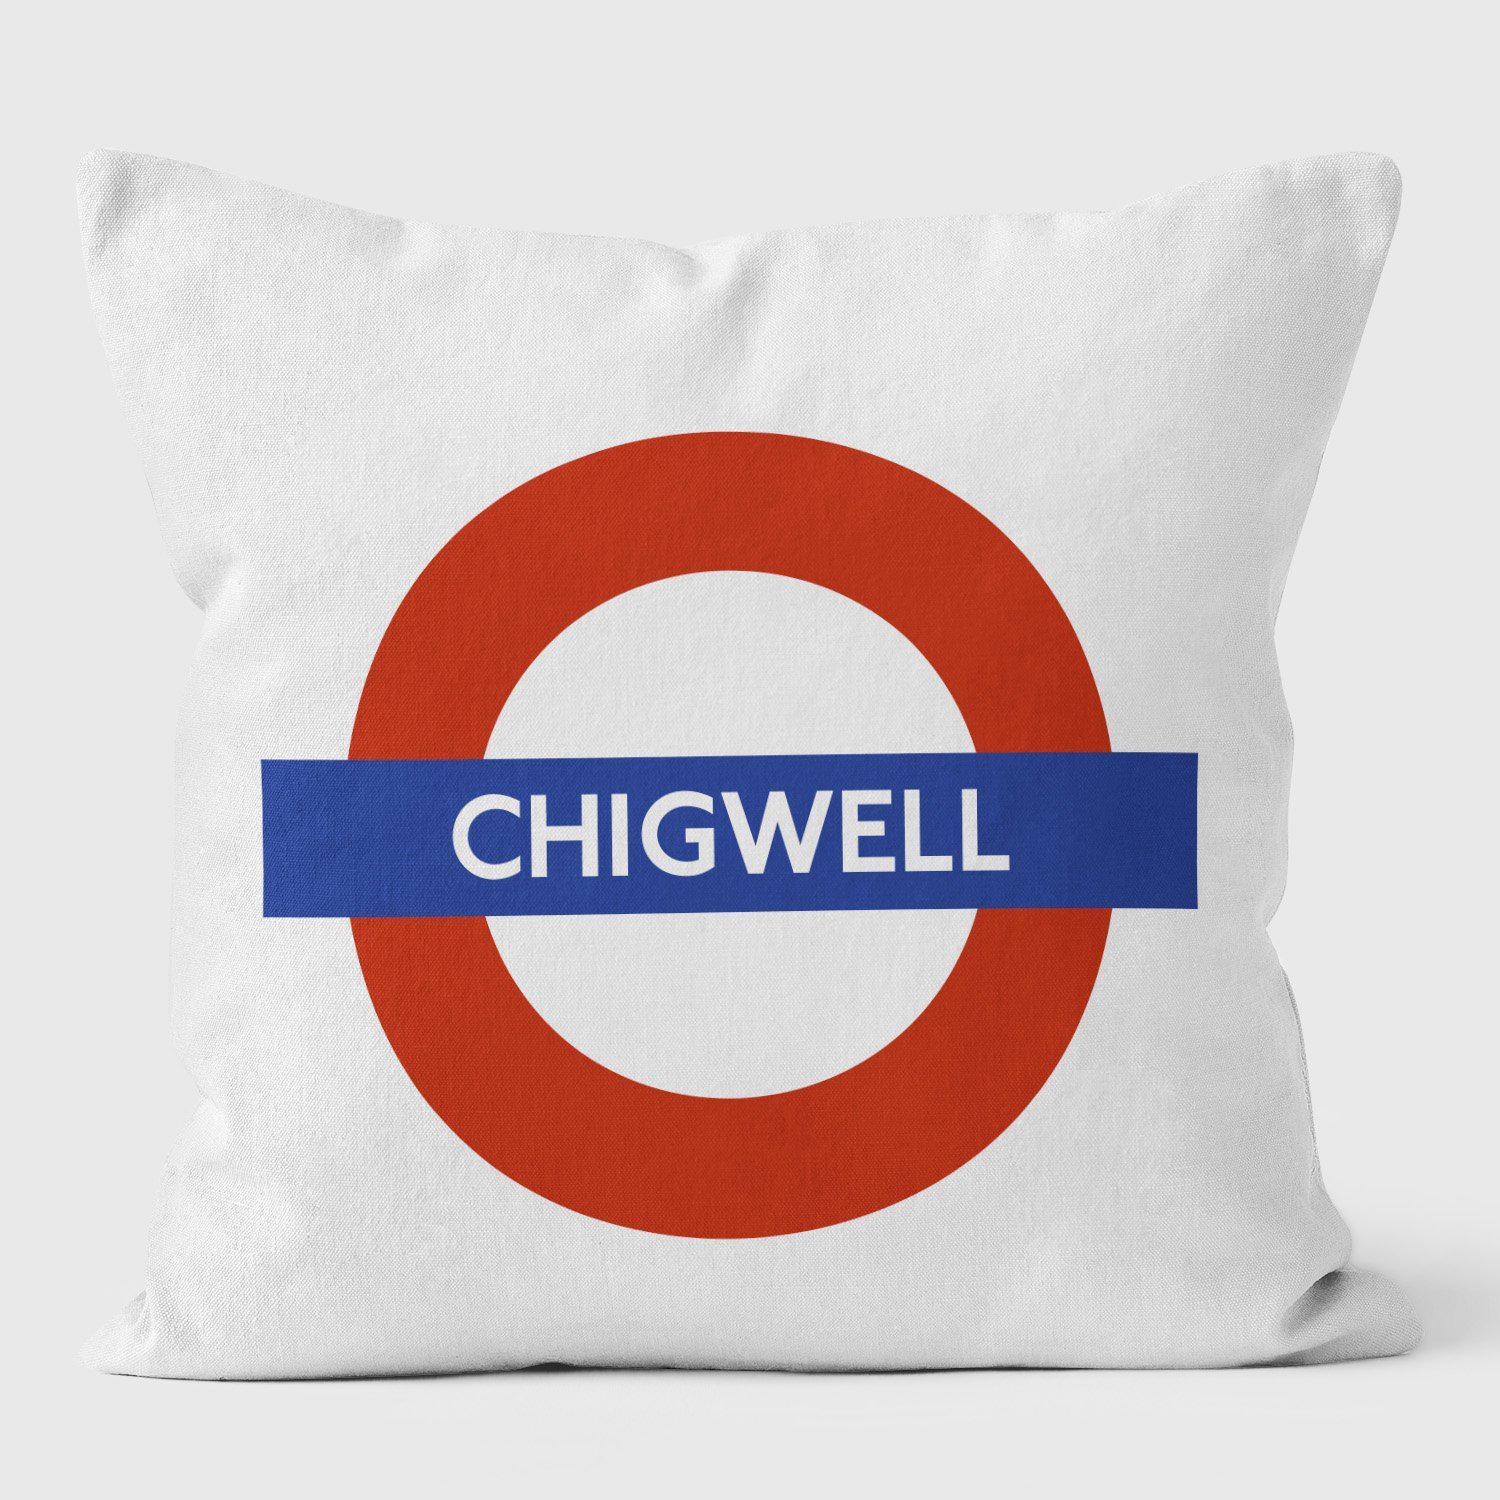 Chigwell London Underground Tube Station Roundel Cushion - Handmade Cushions UK - WeLoveCushions